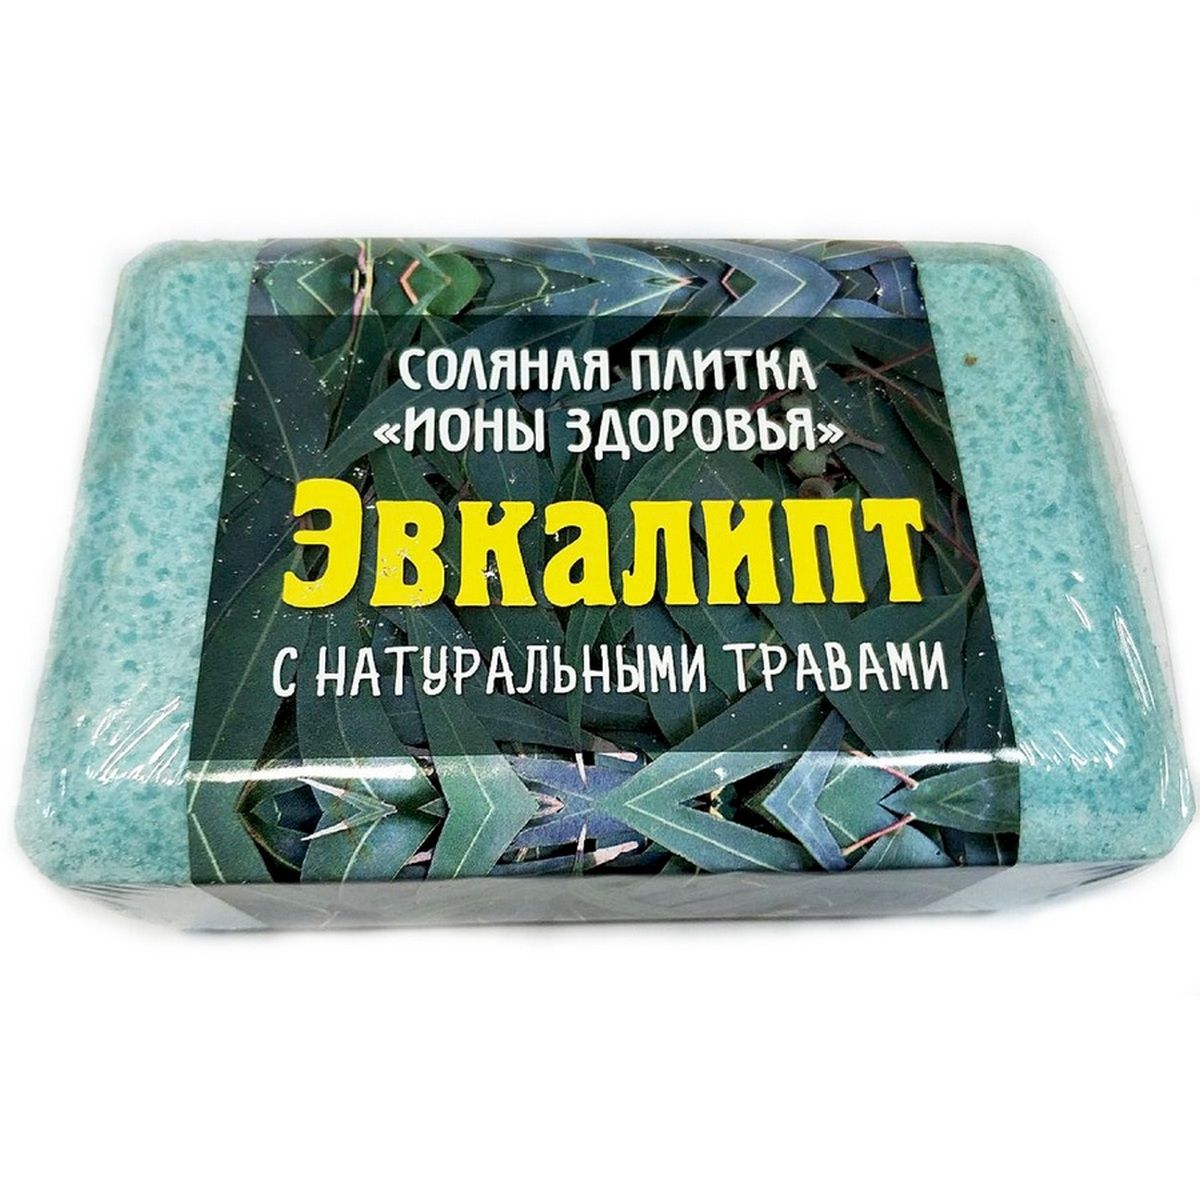 Плитка соляная ИОНЫ ЗДОРОВЬЯ с травами Эвкалипт 1.3кг